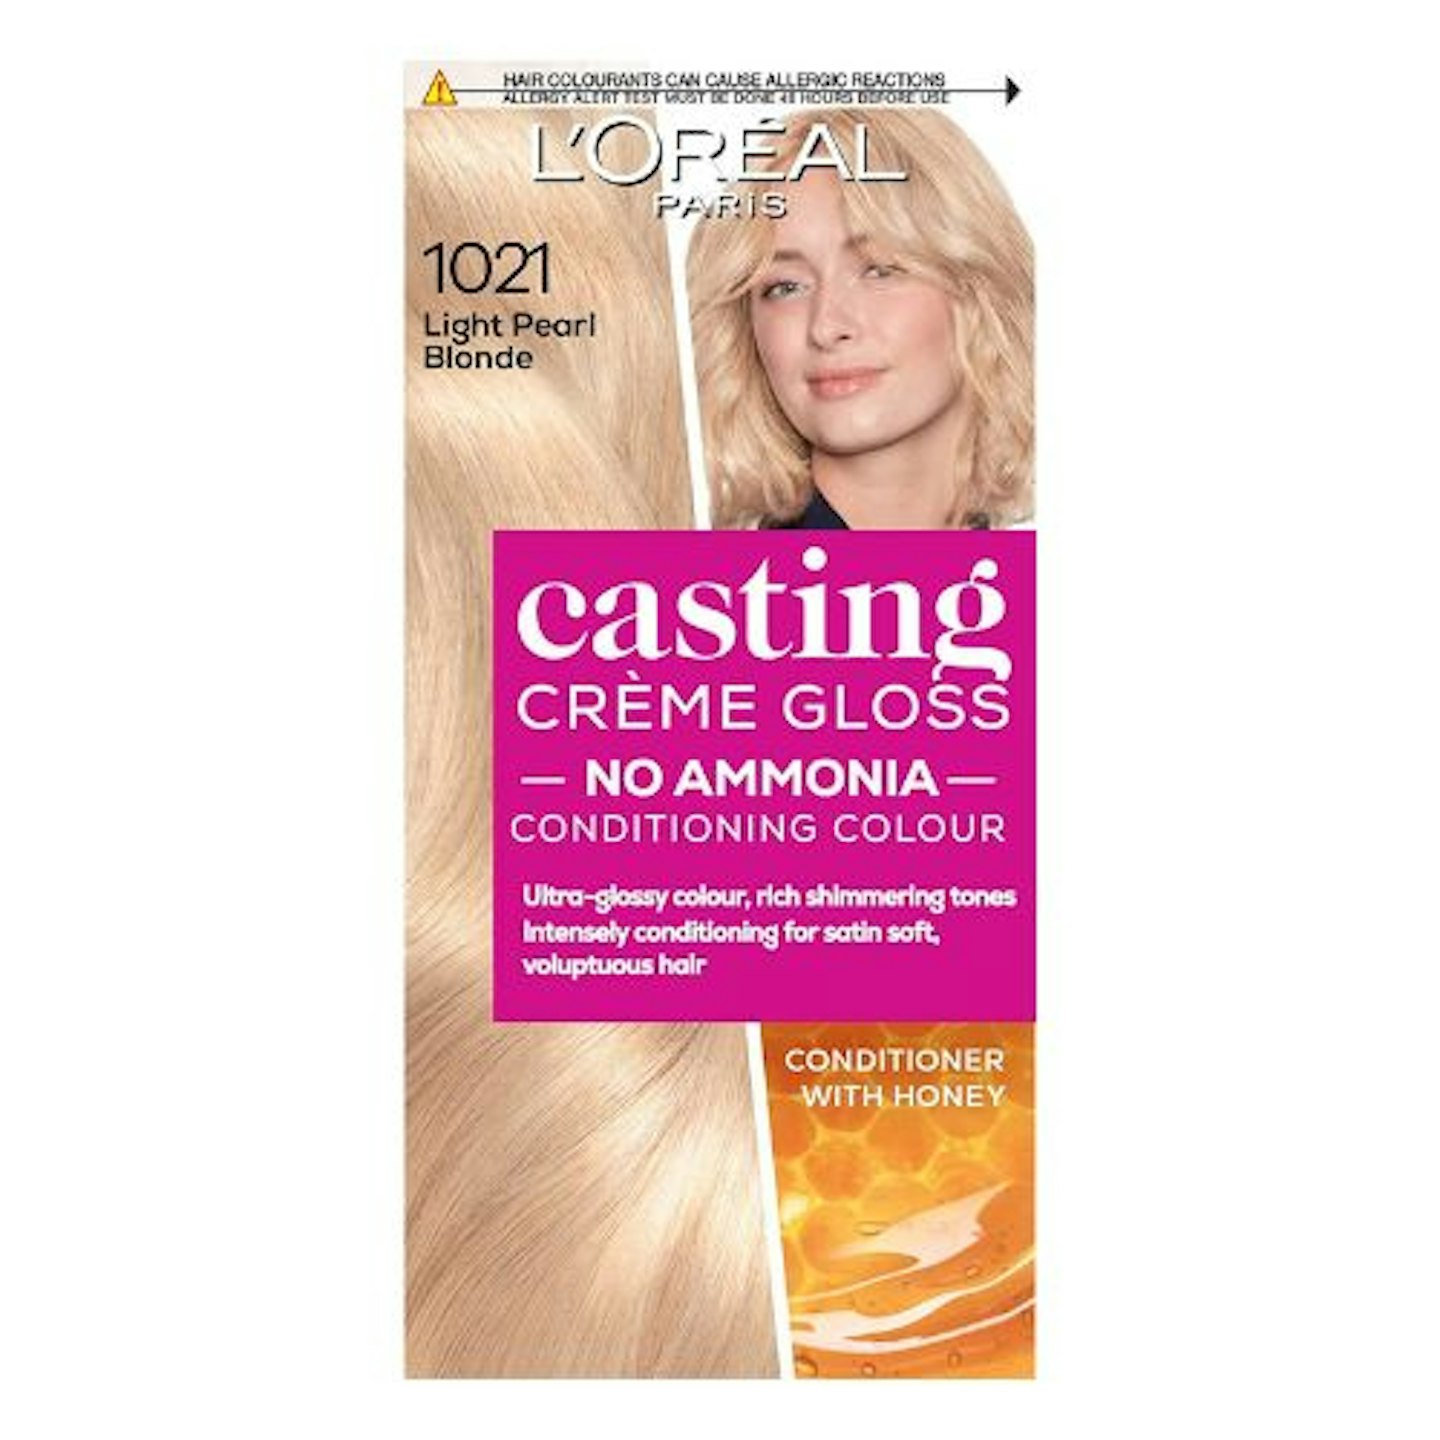 L’Oréal Paris Casting Crème Gloss Semi-Permanent Hair Dye (1021 Light Pearl Blonde)